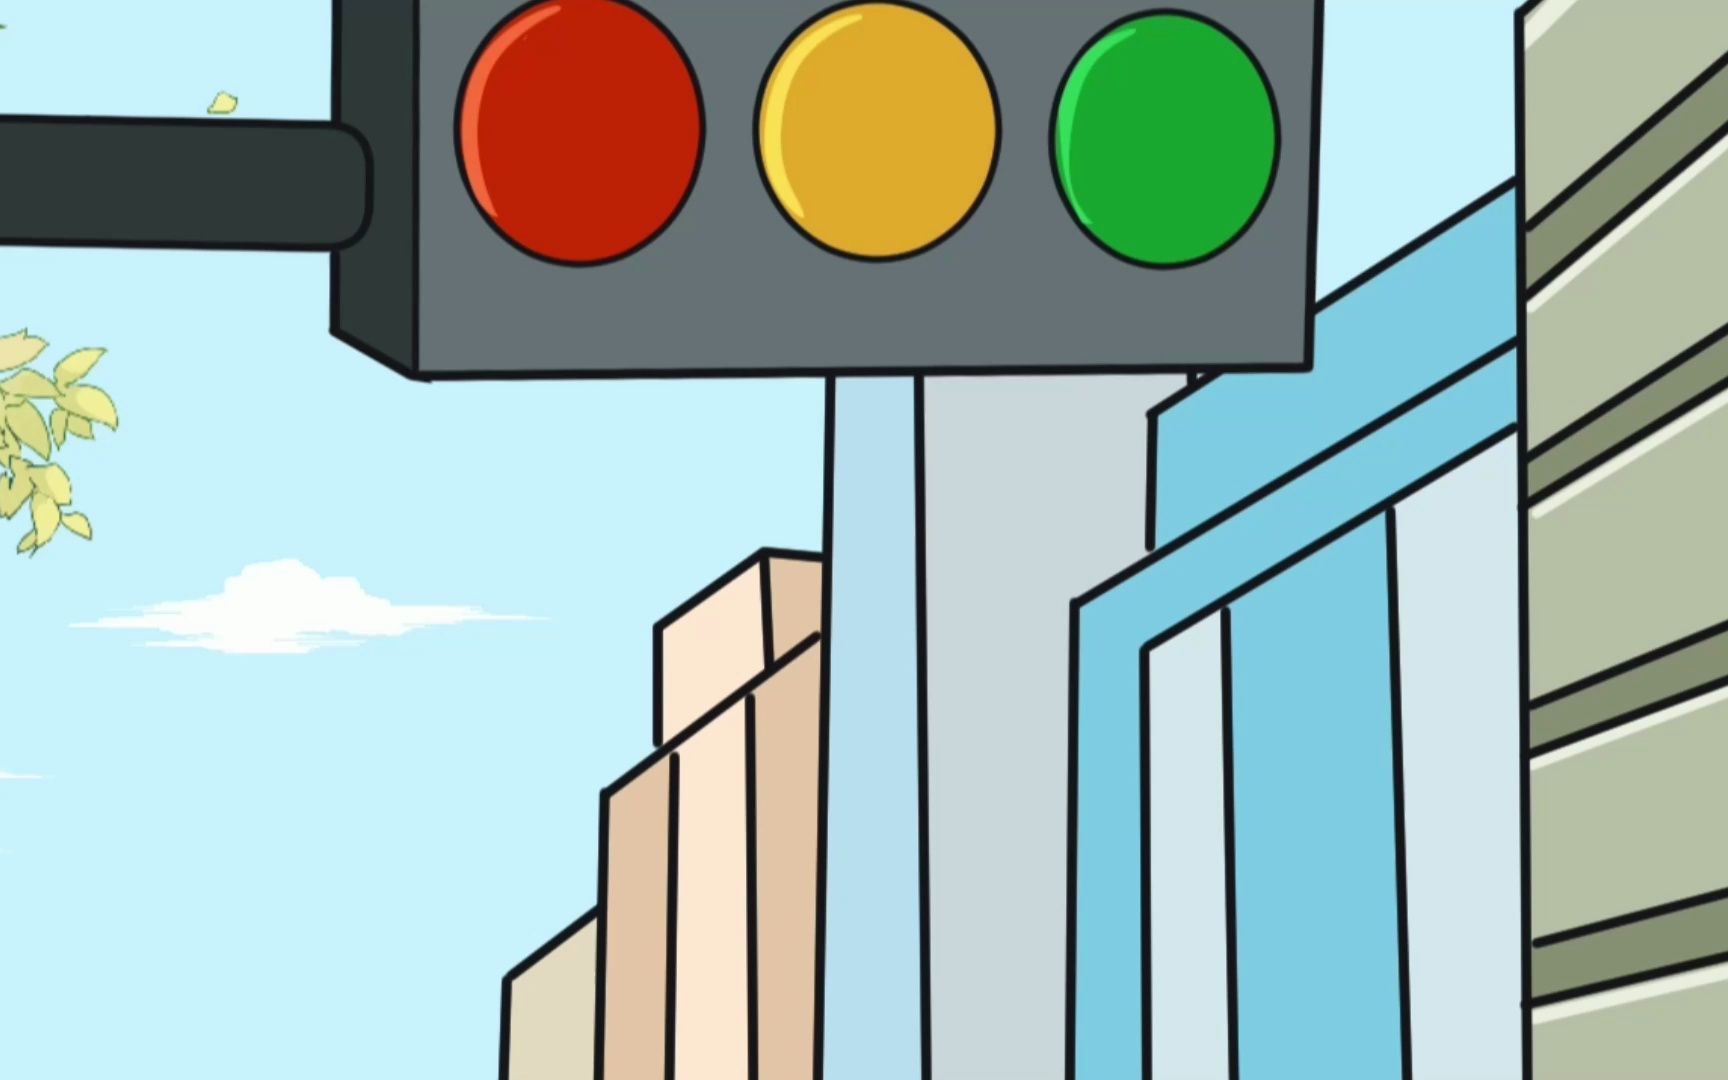 为什么红绿灯要用红色表示停止?